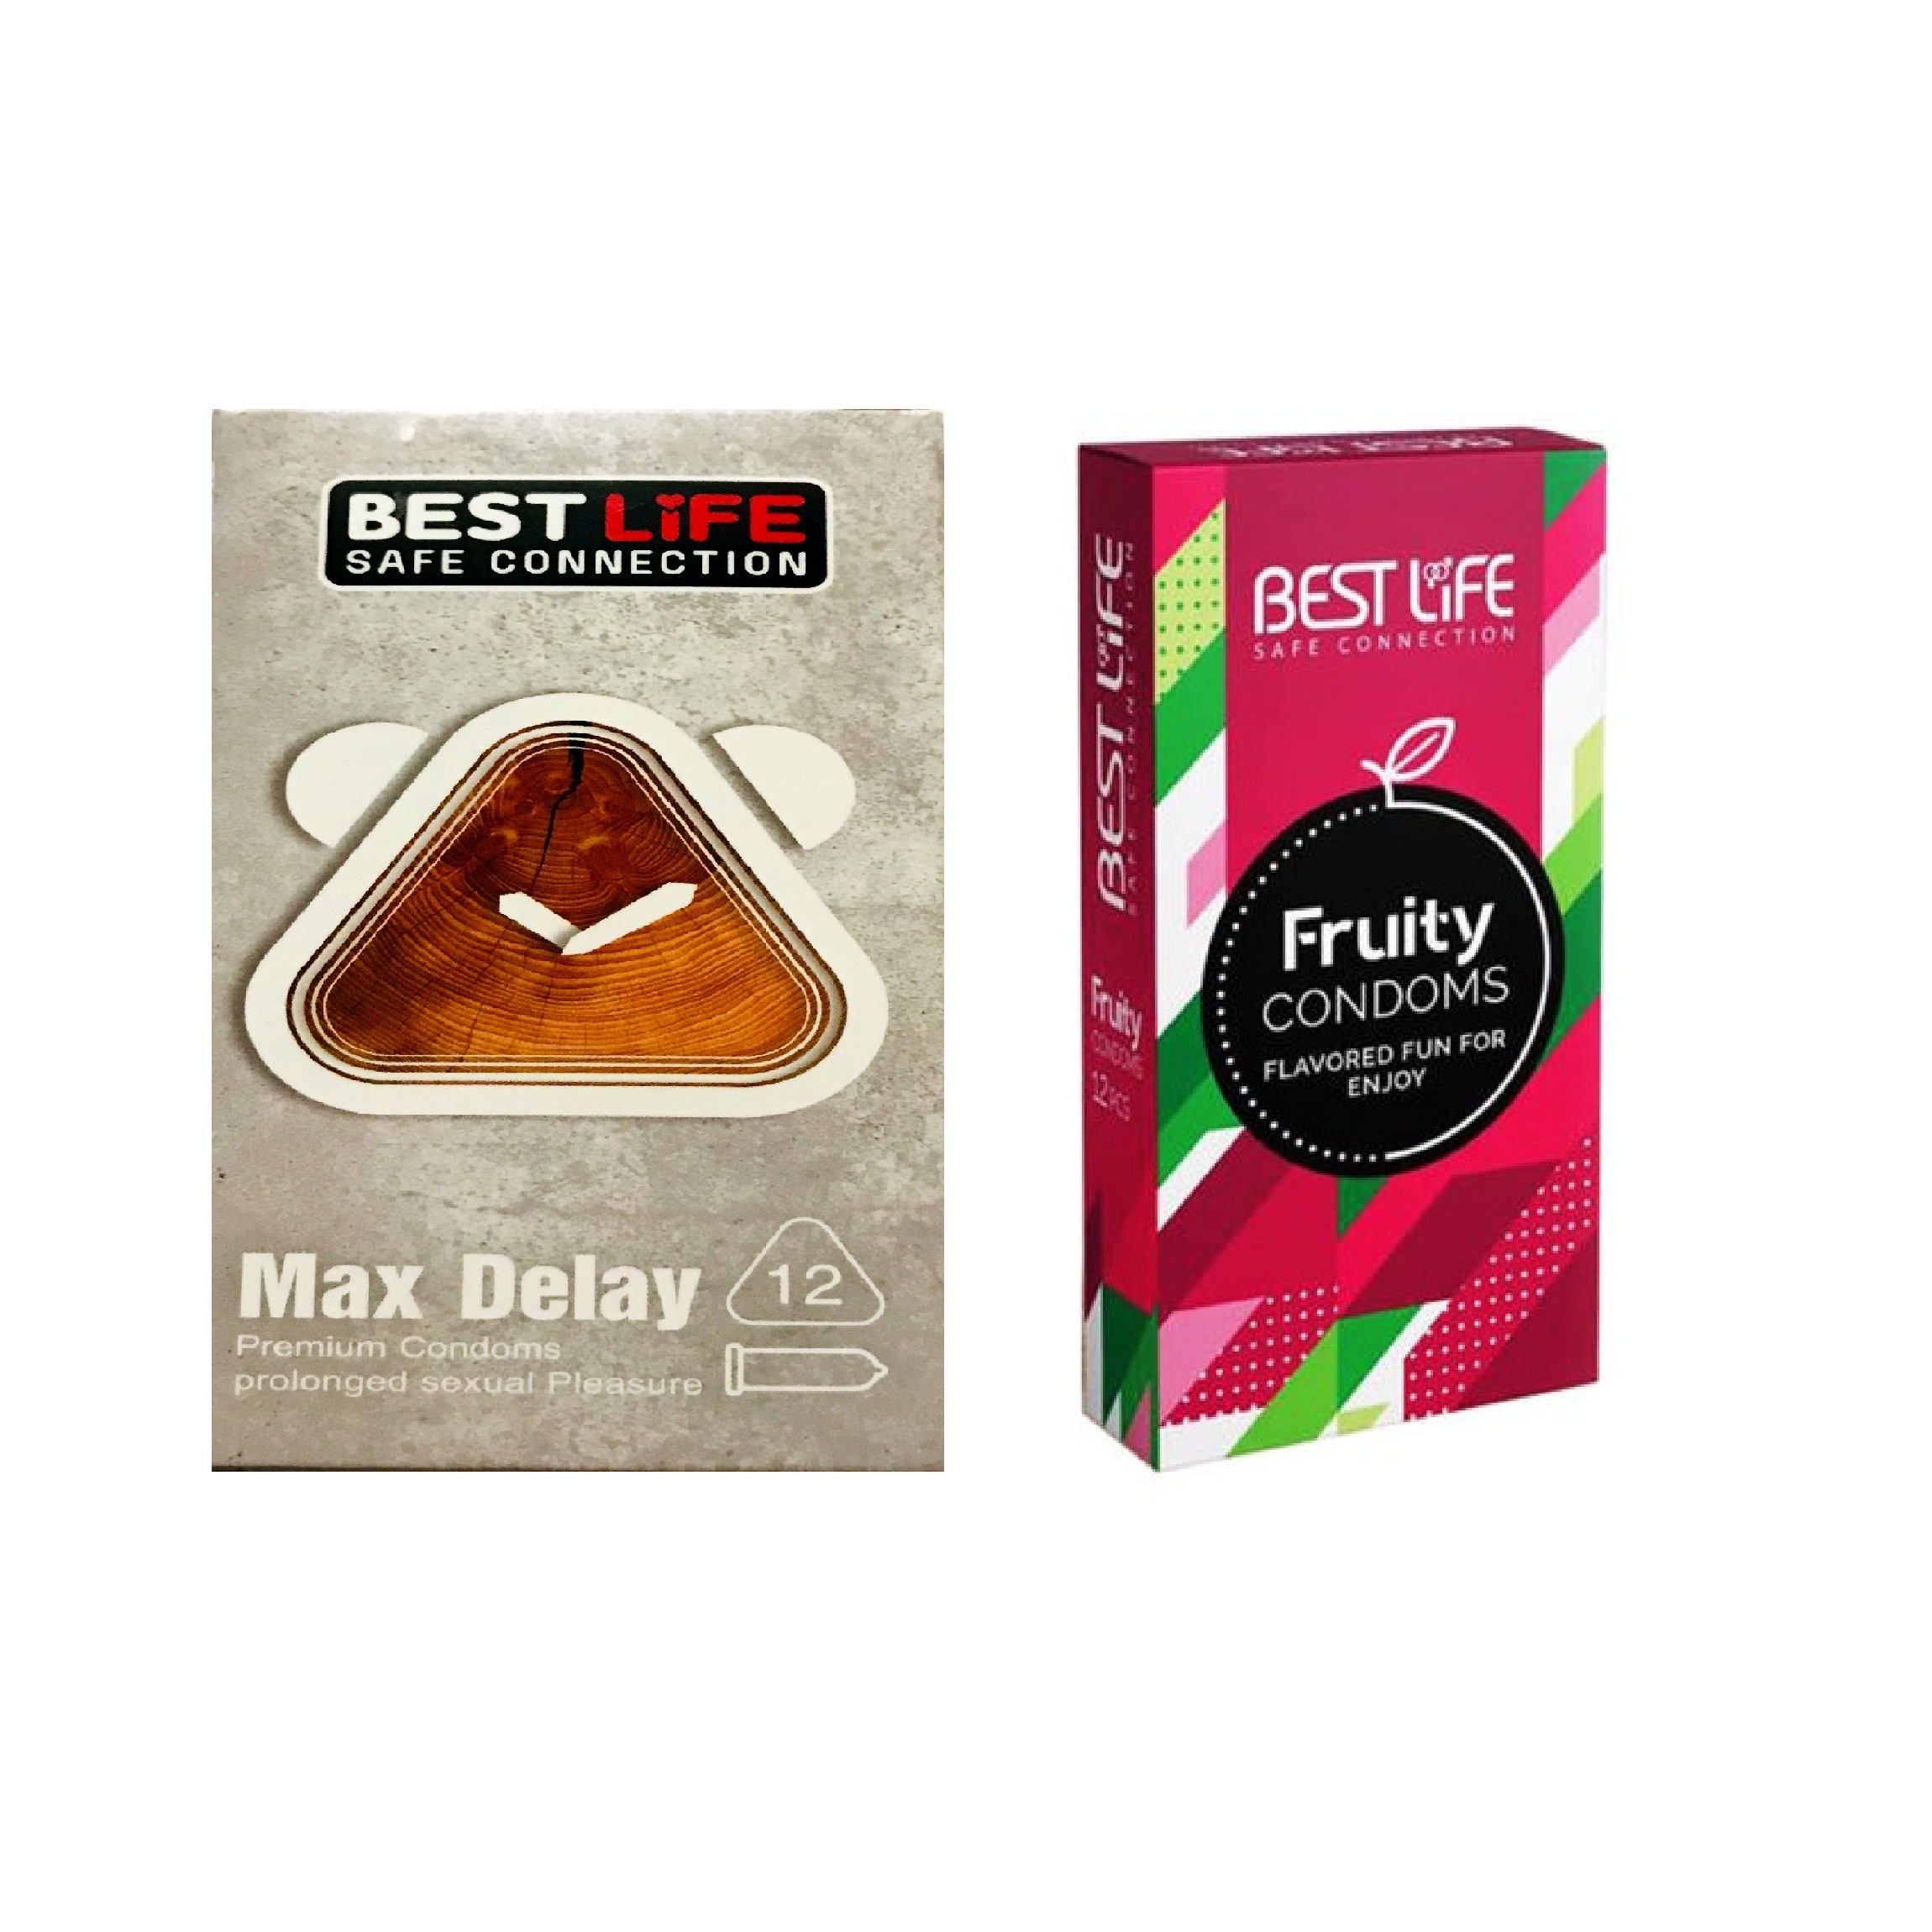 کاندوم بست لایف مدل Max Delay بسته 12 عددی به همراه کاندوم بست لایف مدل Fruity بسته 12 عددی 